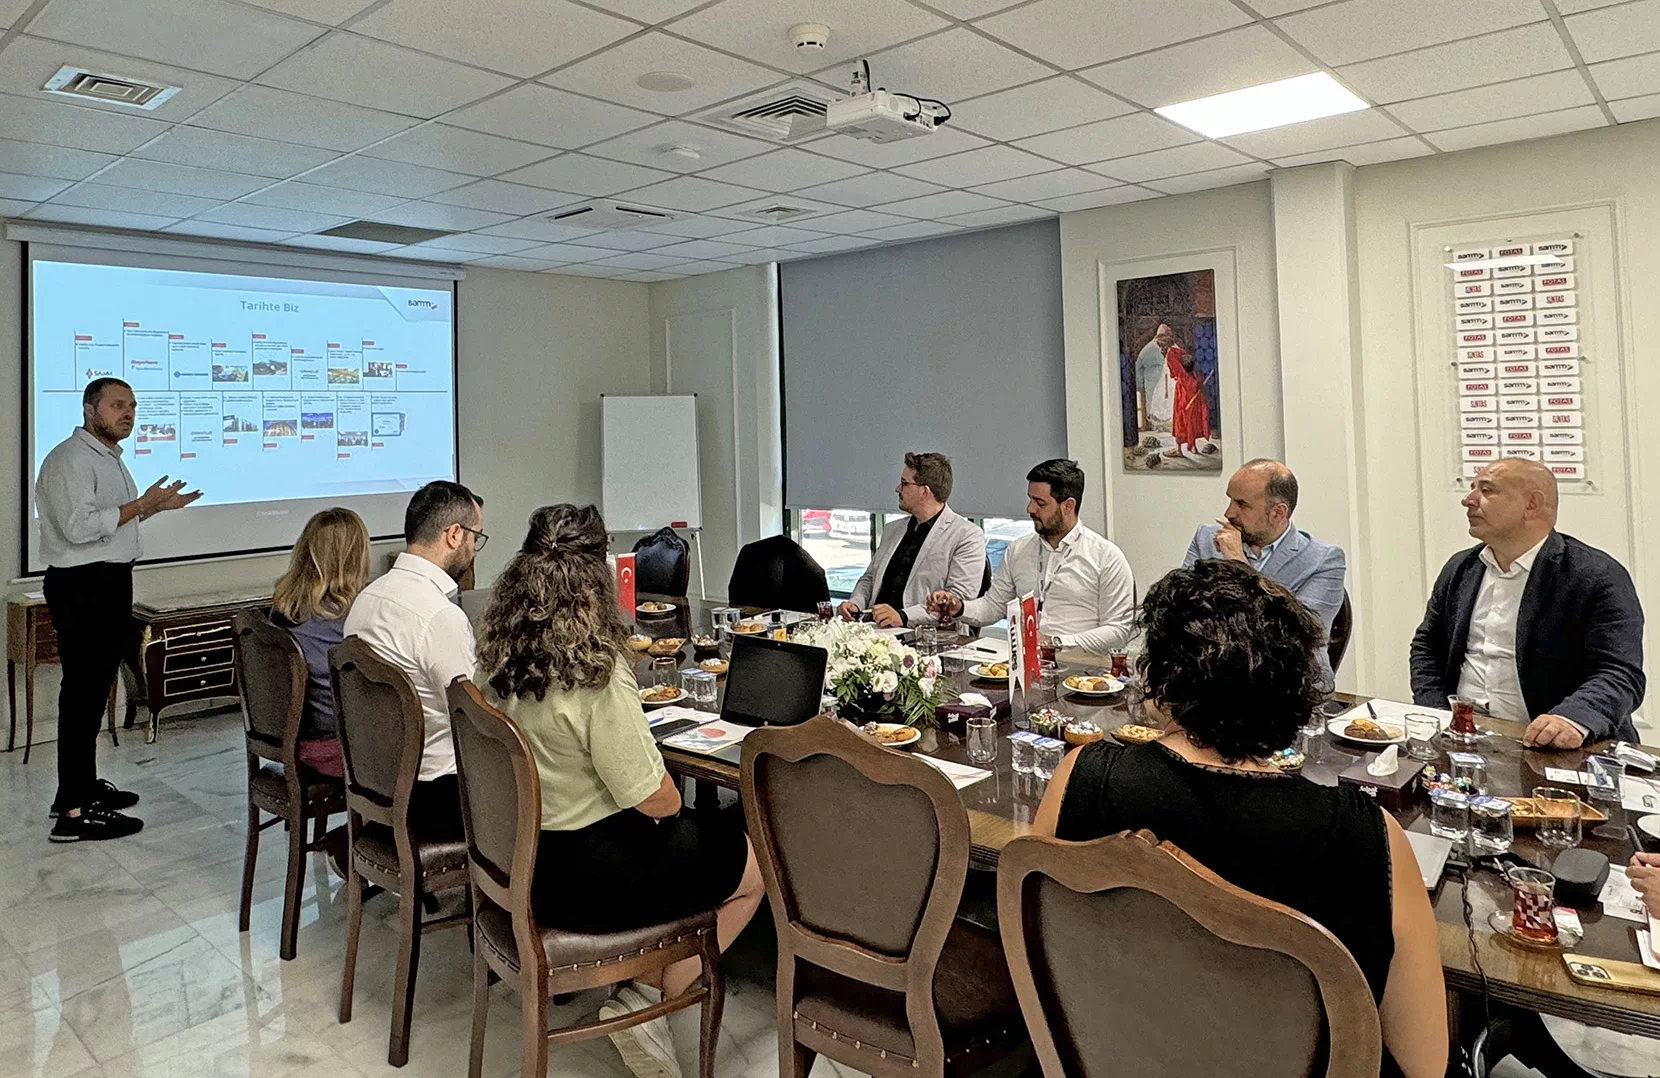 Türk Telekom’s Esteemed Data Center Team Visits Our Factories